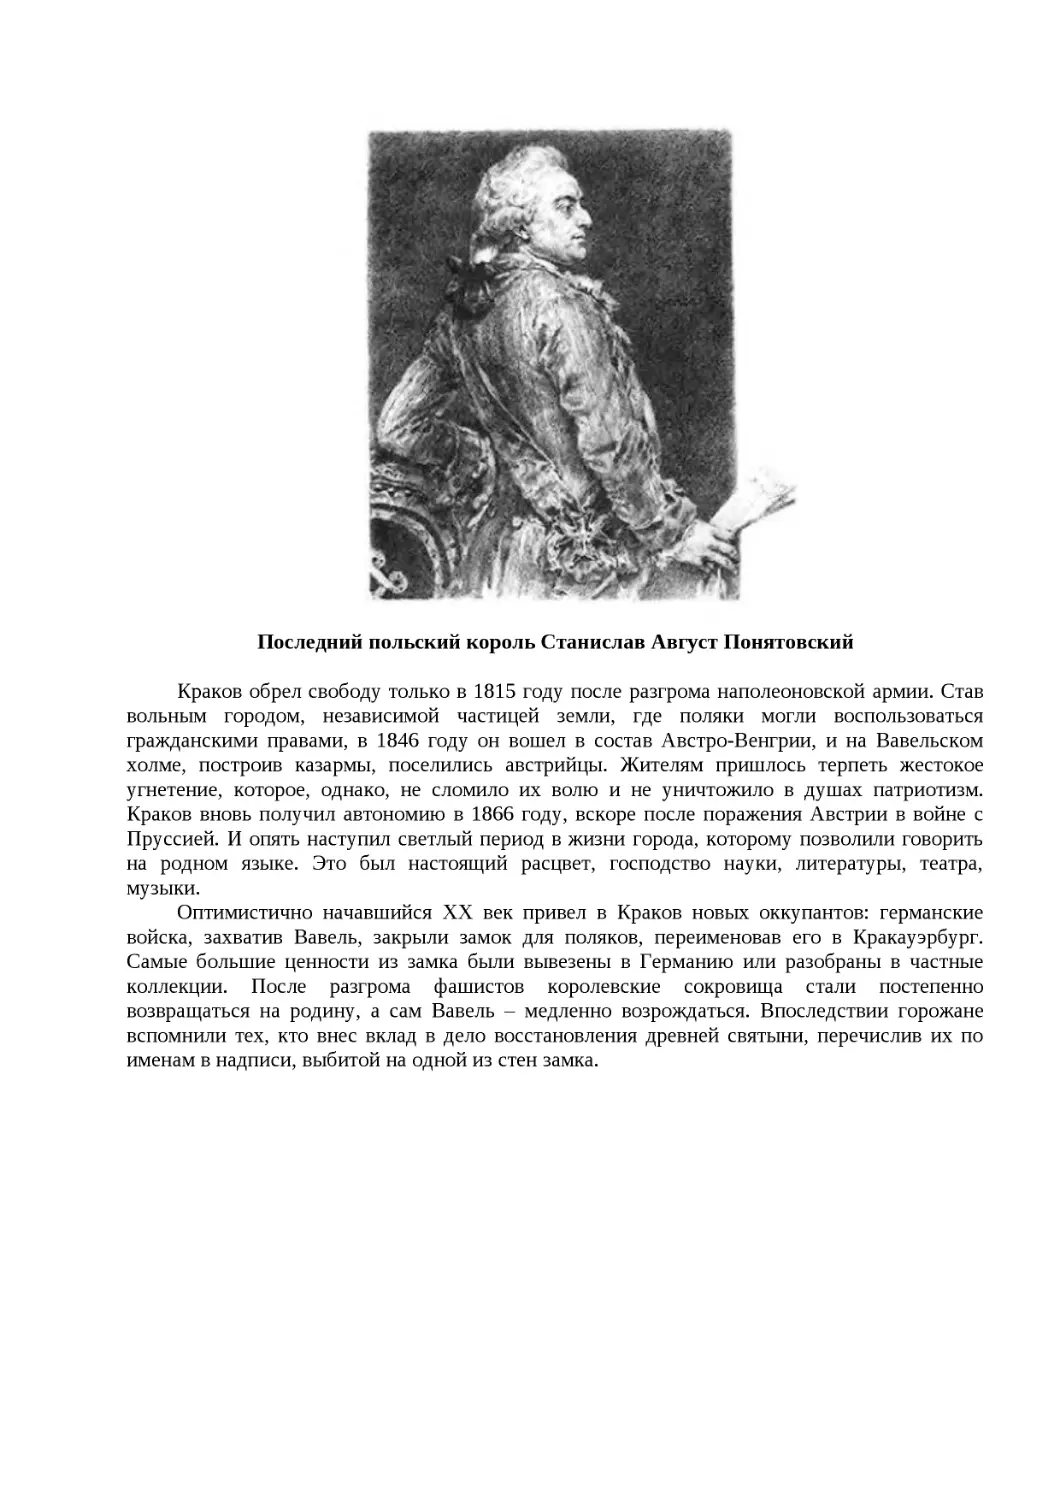 ﻿Последний польский король Станислав Август Понятовски